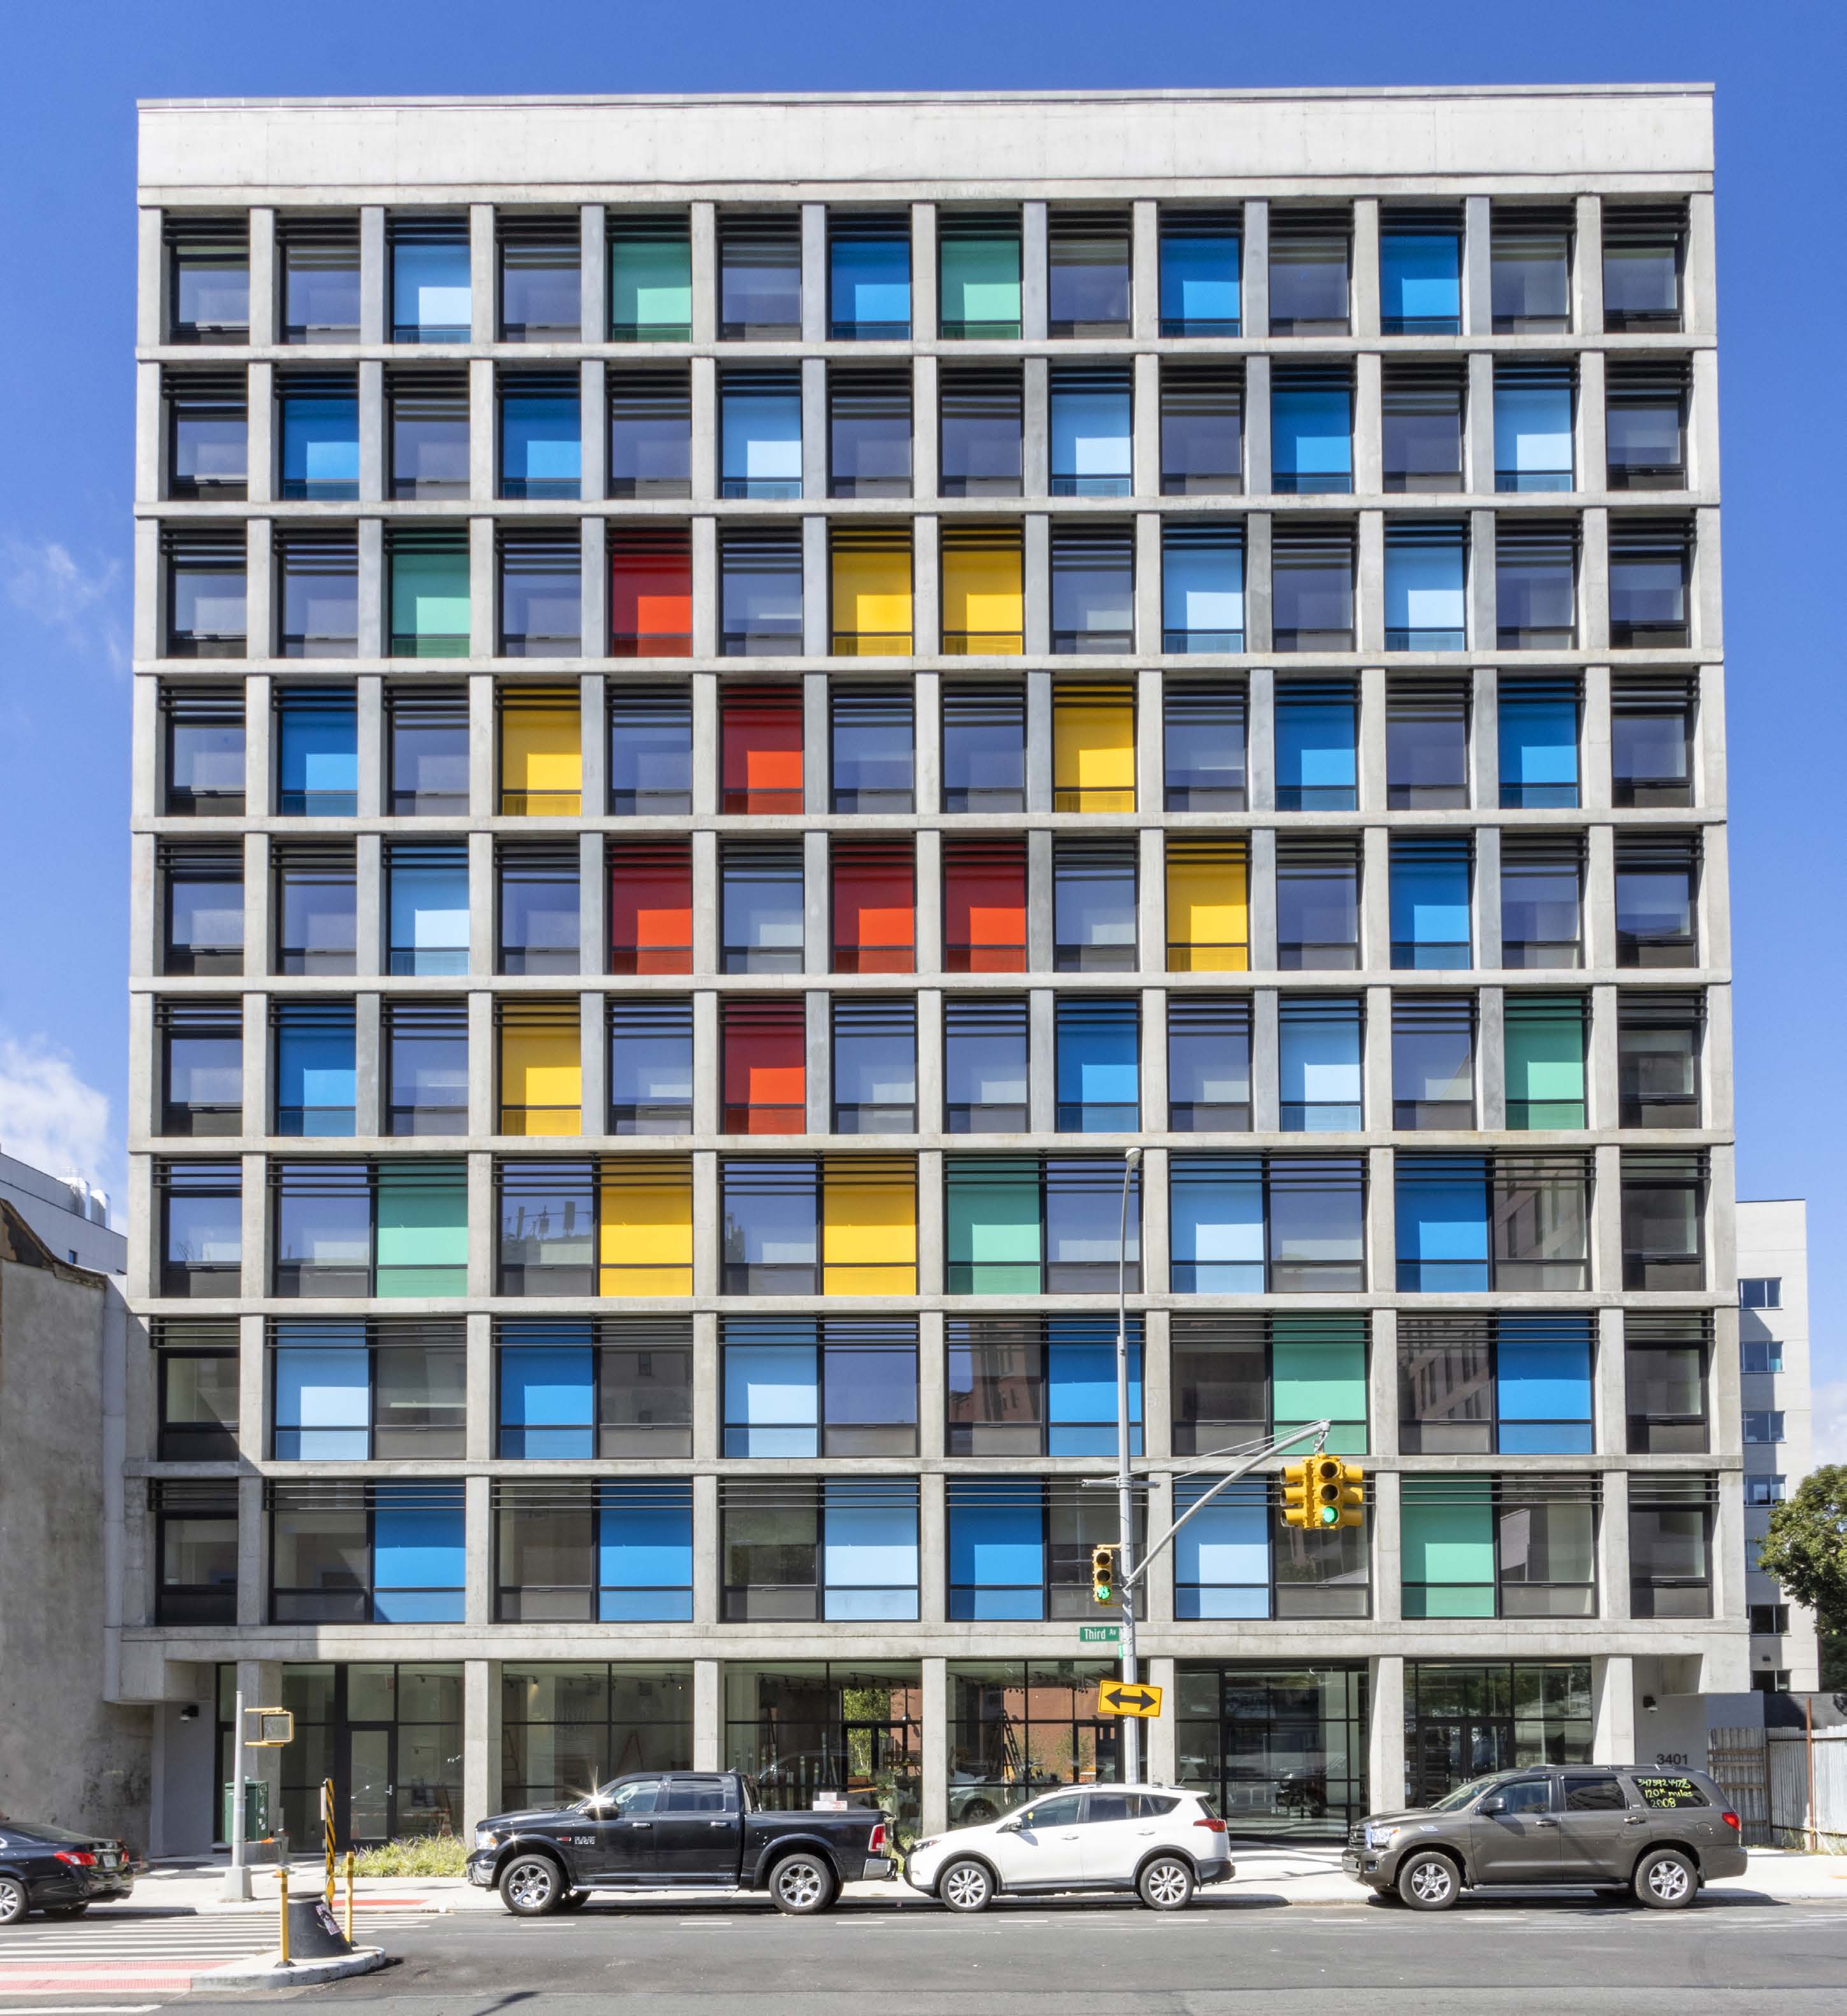 Colorful facade of el borinquen 